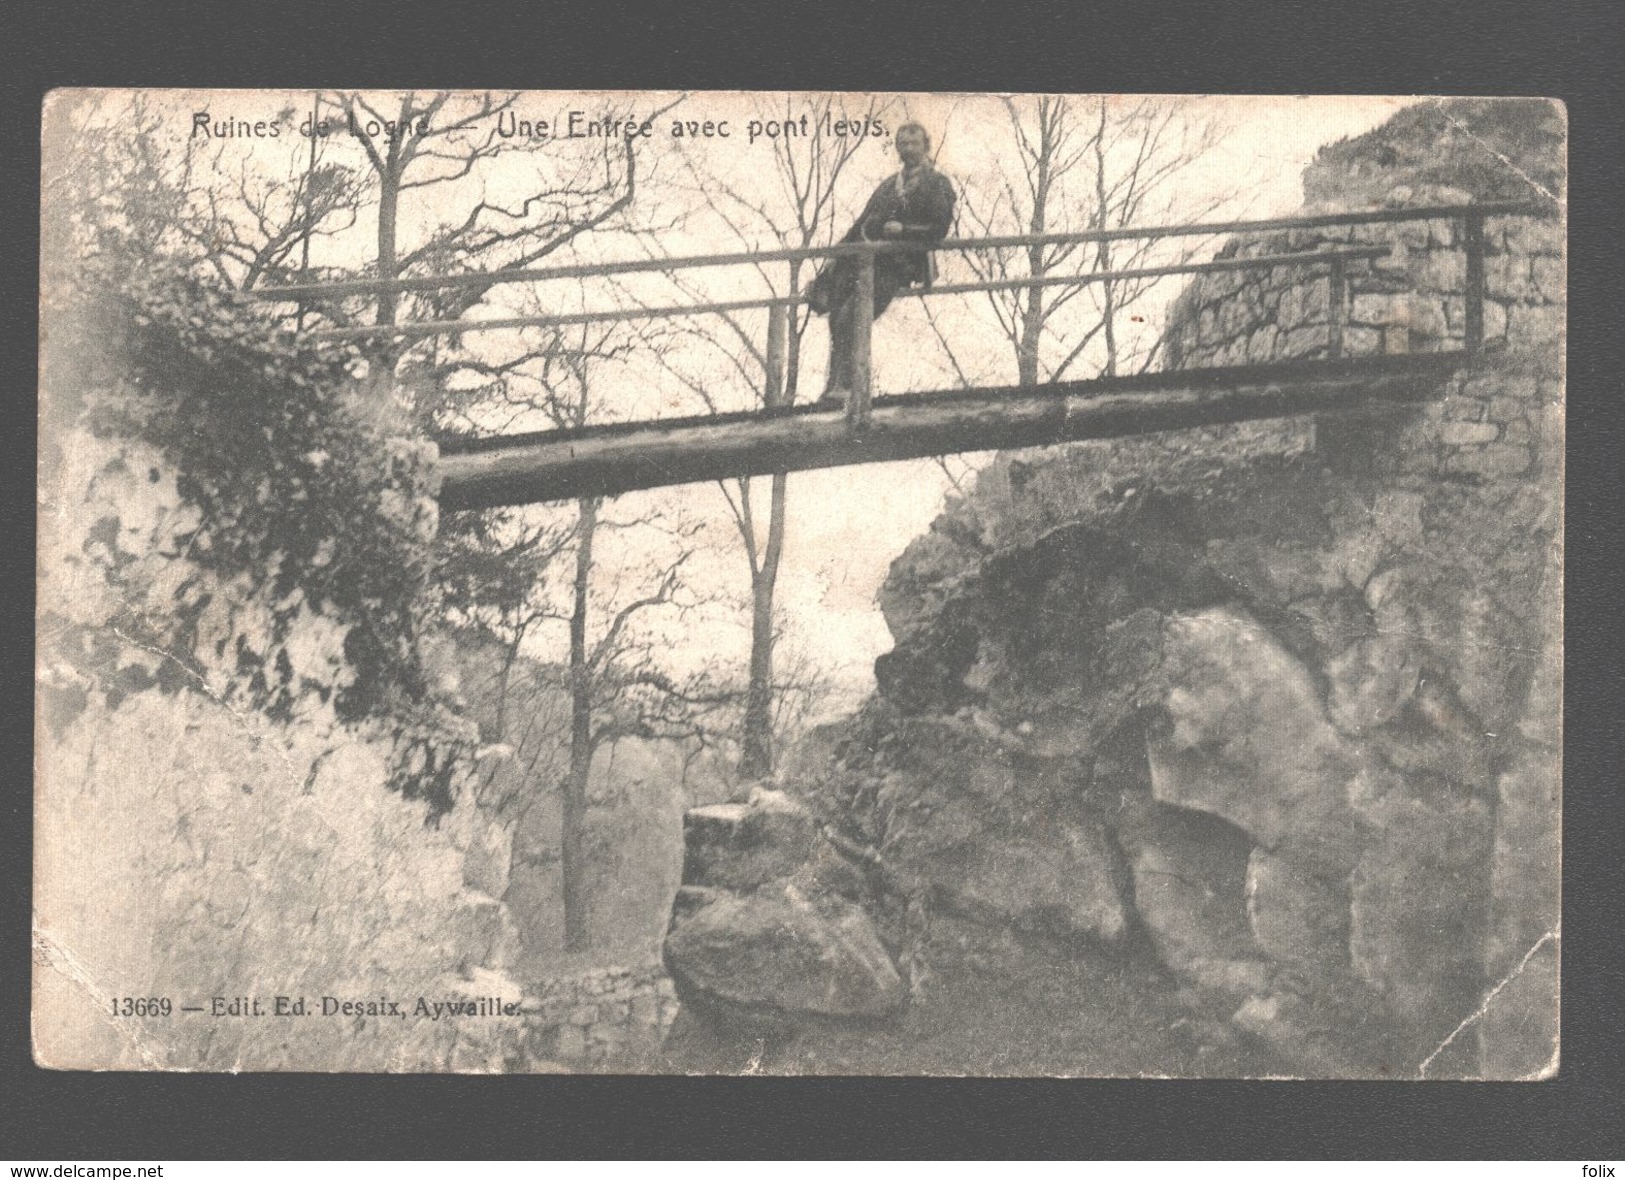 Logne - Ruines De Logne - Une Entrée Avec Pont Levis - Animée - 1908 - Ferrières